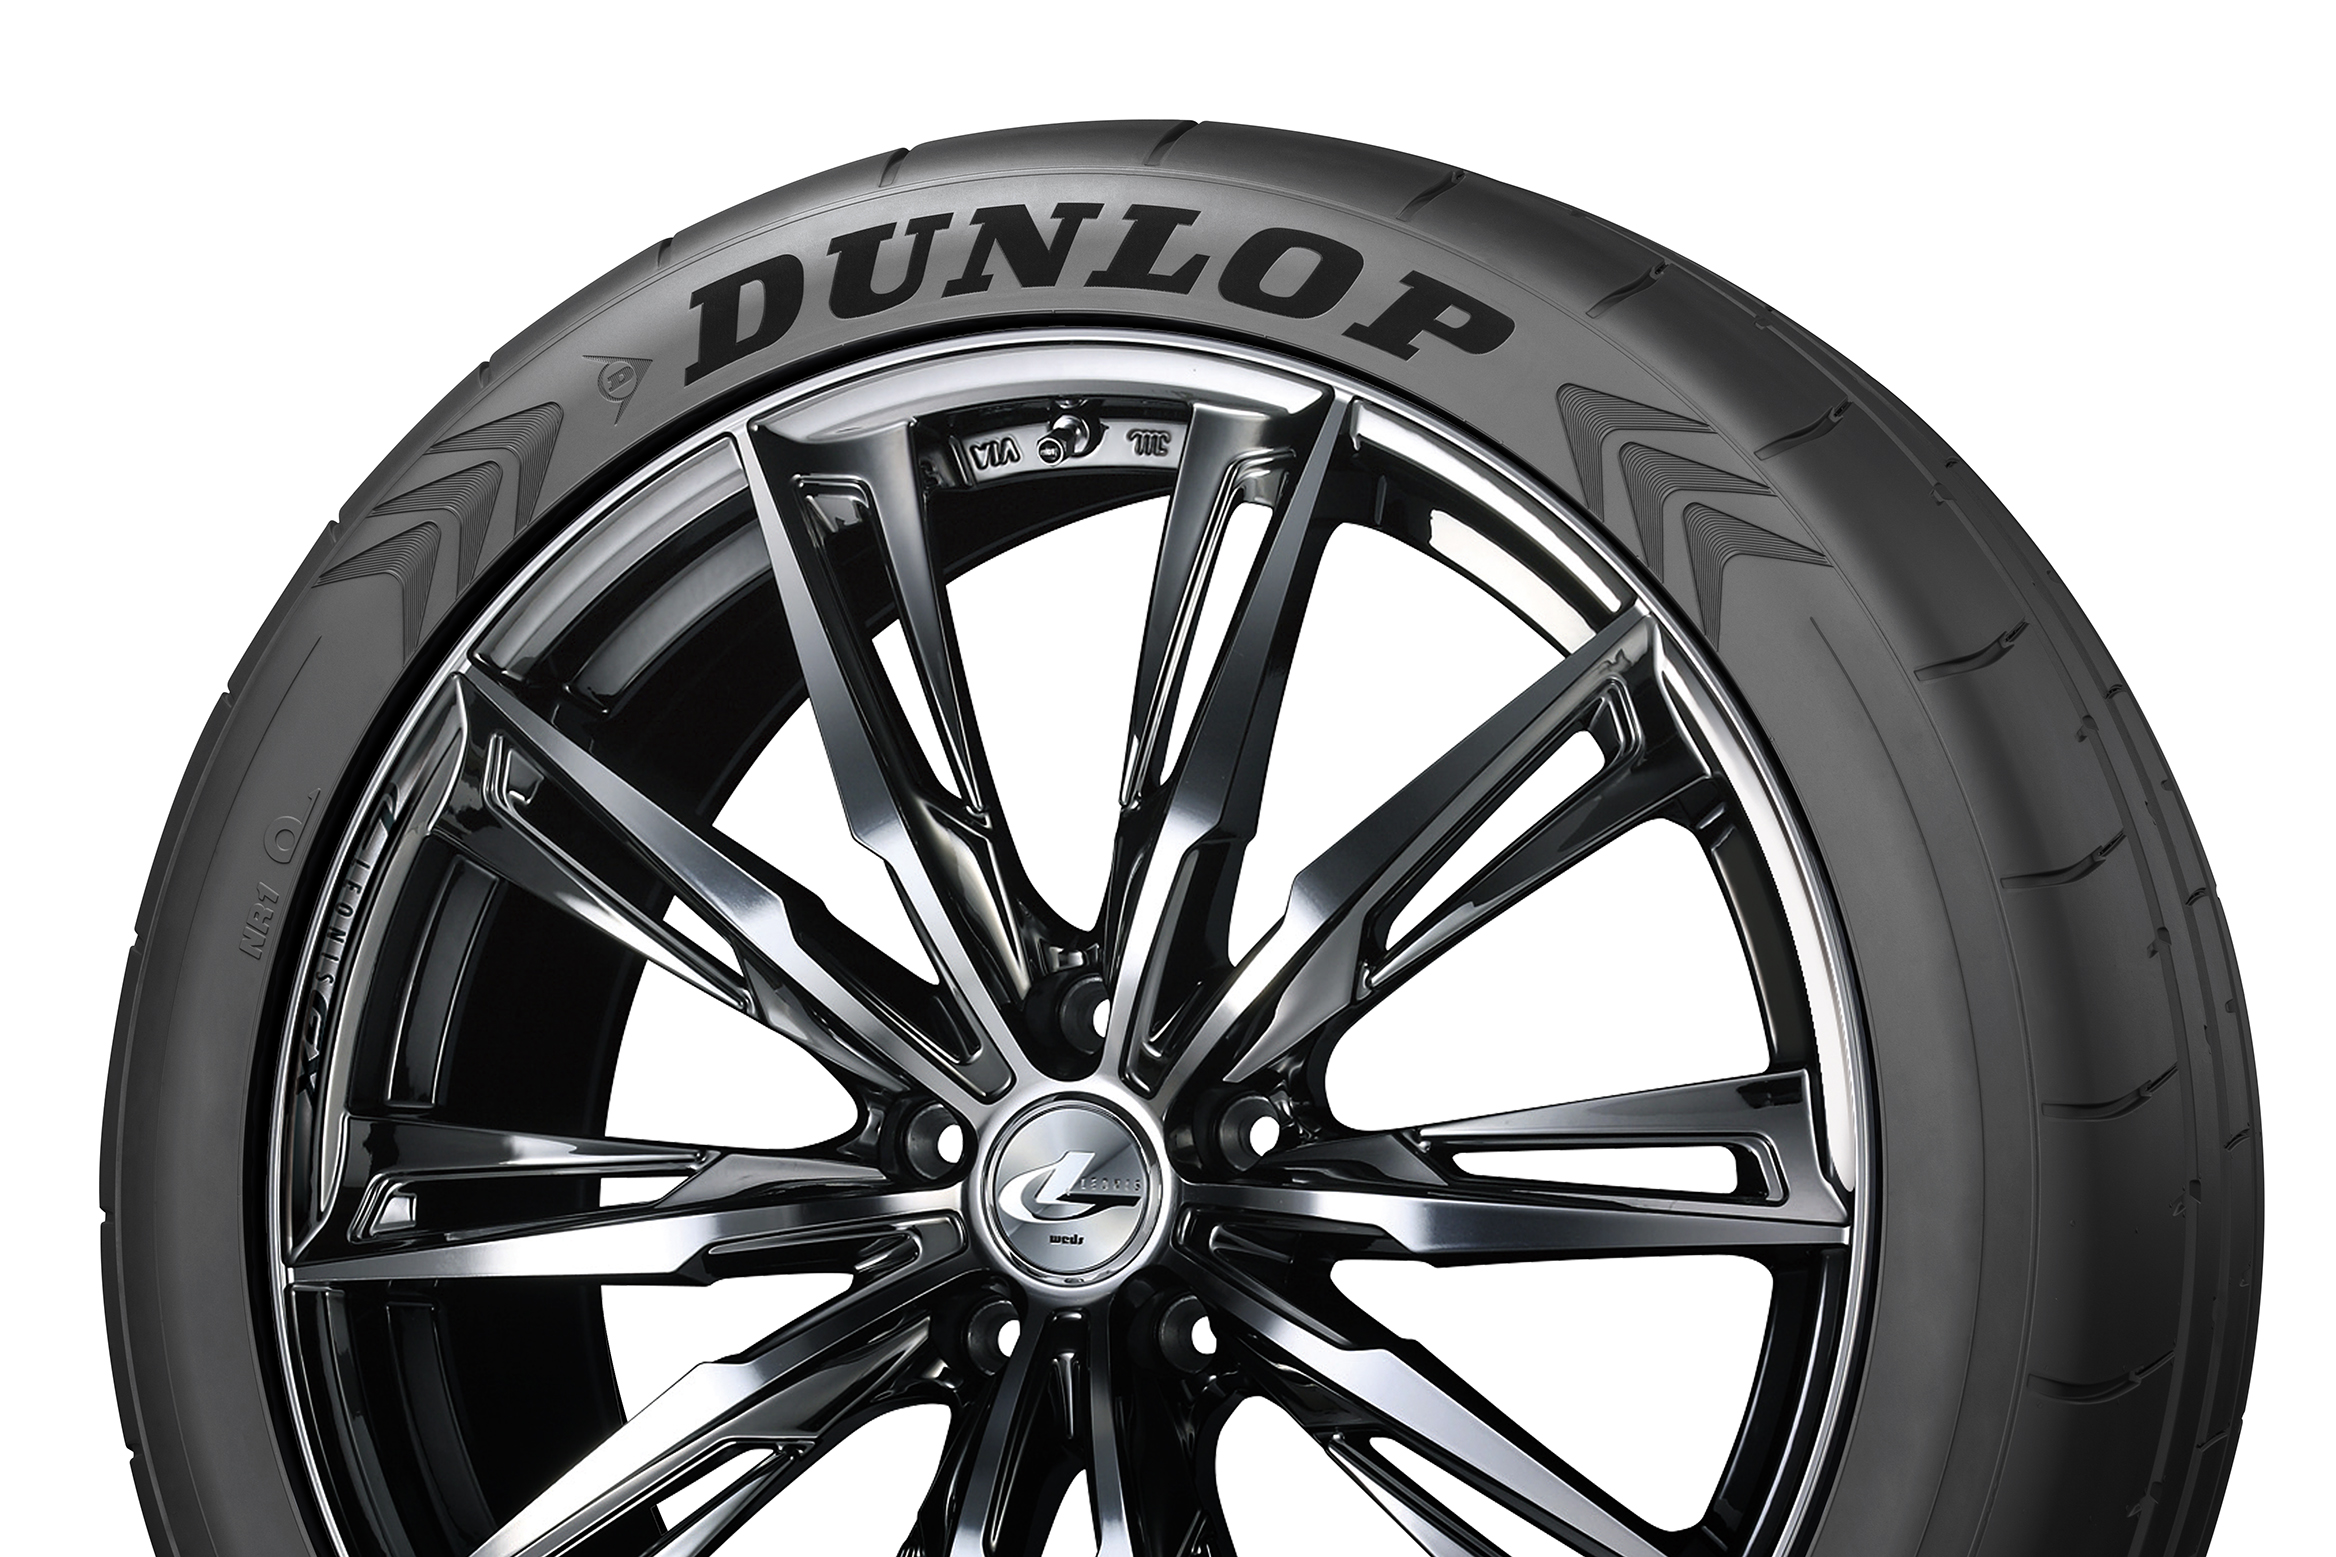 Dunlop: pneus mais pretos com a tecnologia Nano Black